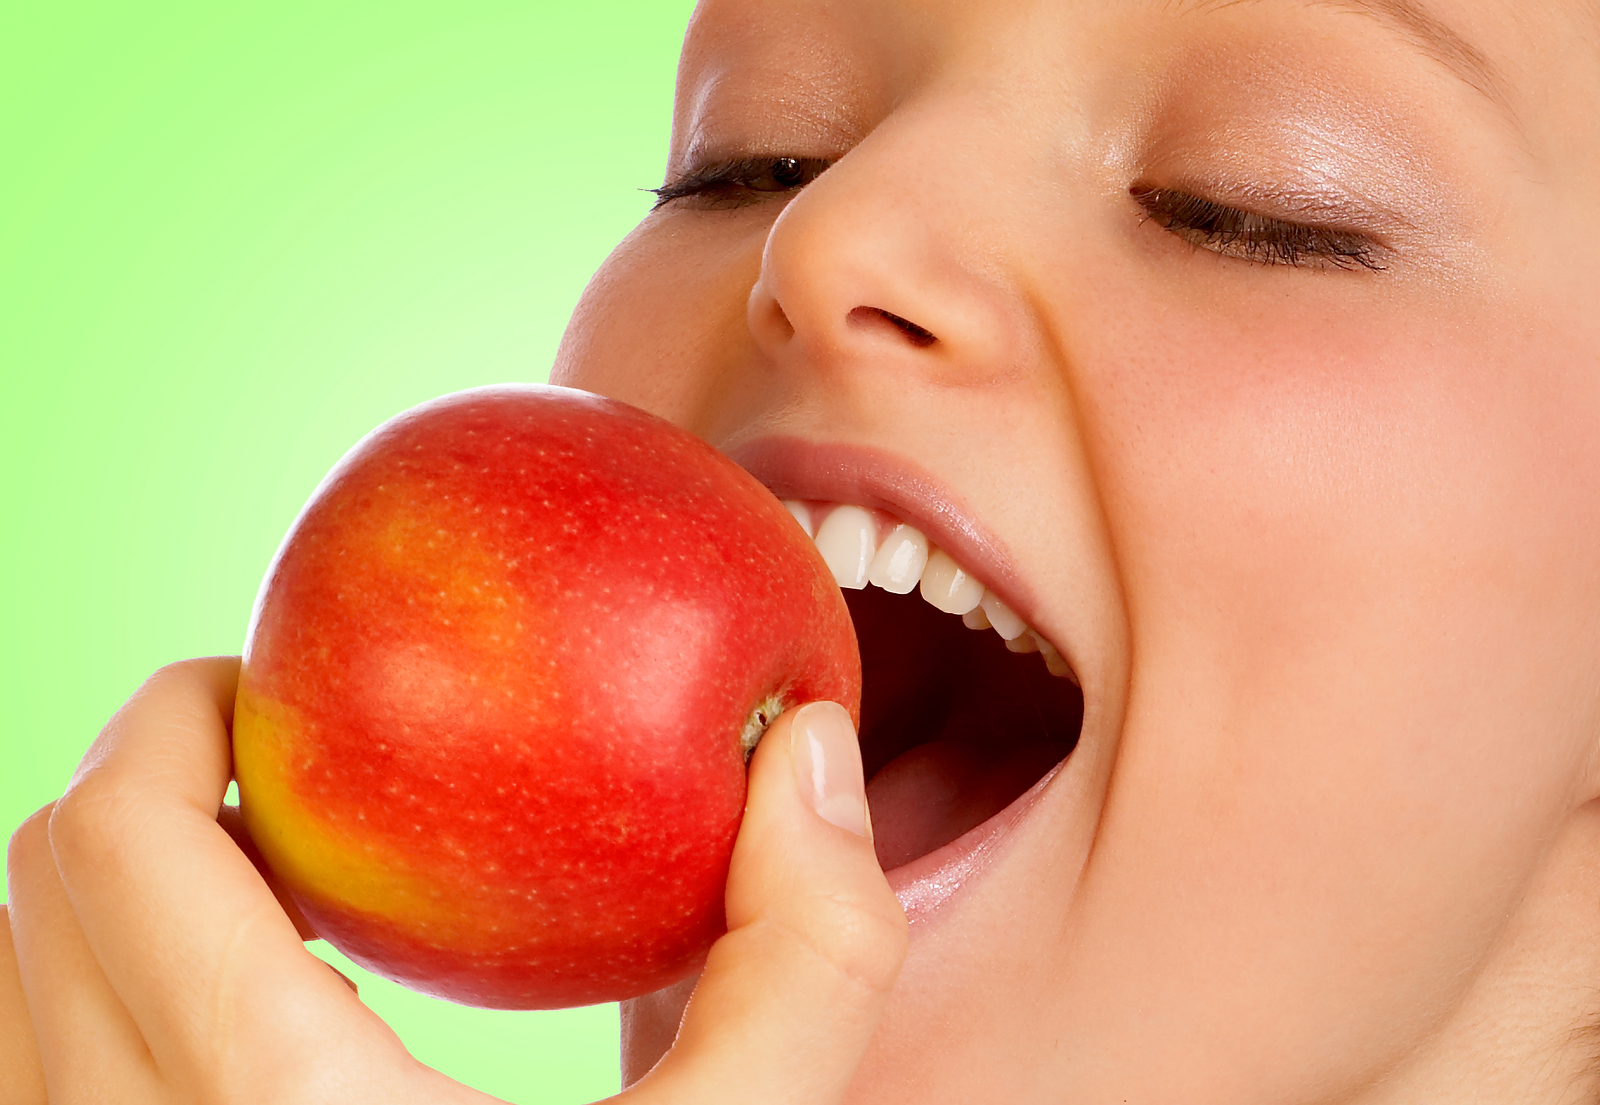 Ένα μήλο την ημέρα τη χοληστερόλη κάνει πέρα